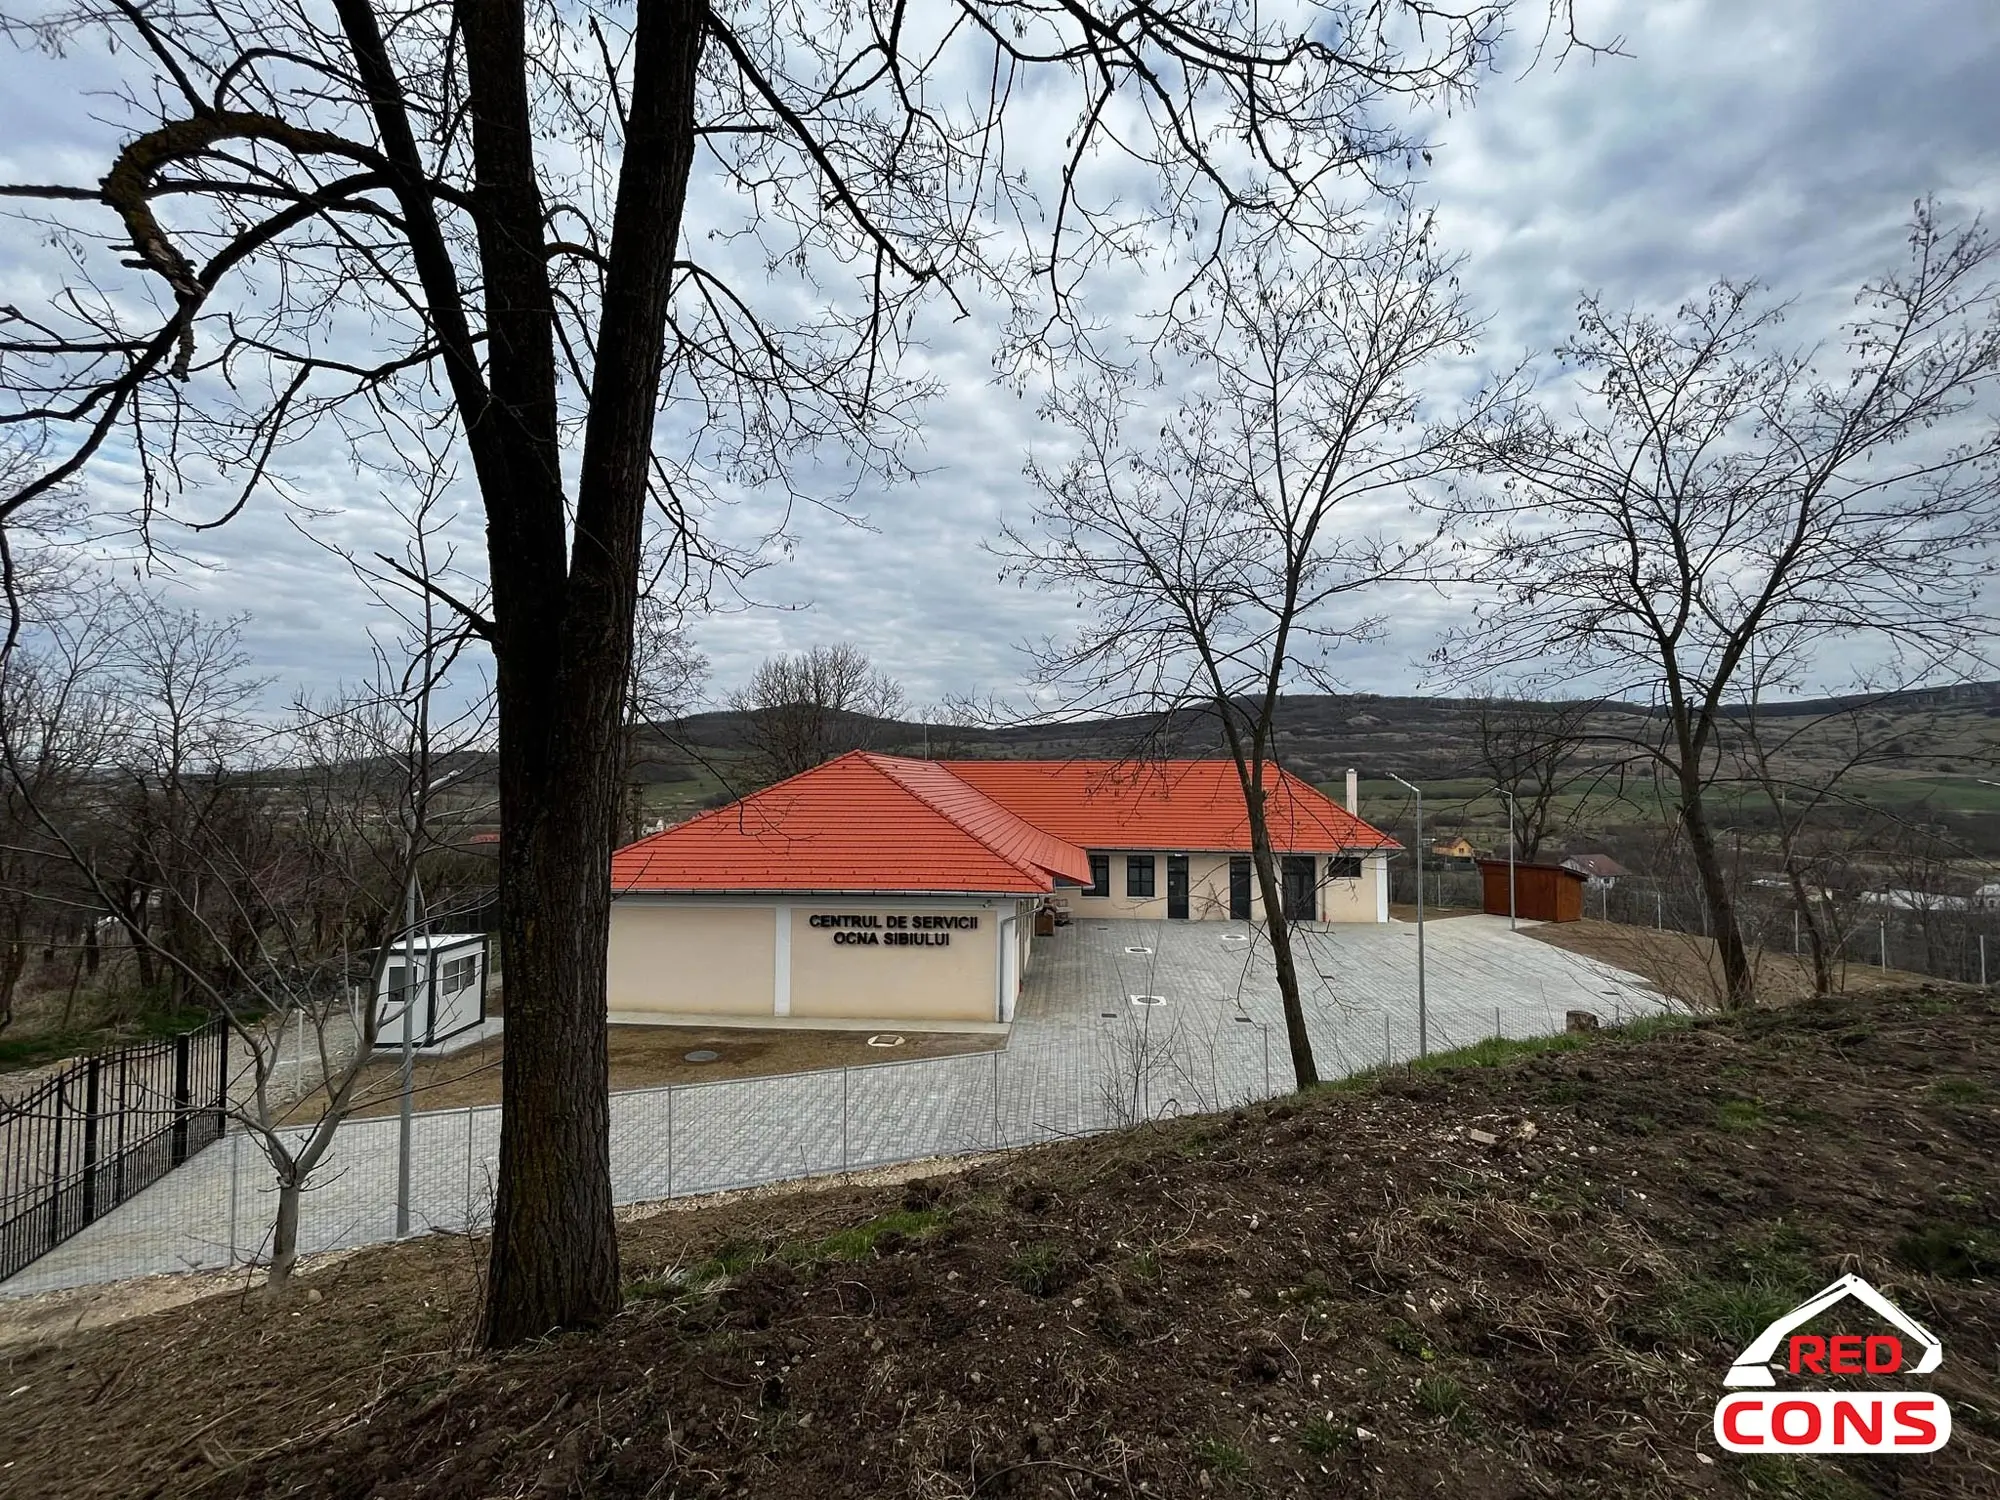 Centru de Servicii Ocna Sibiului Red Cons